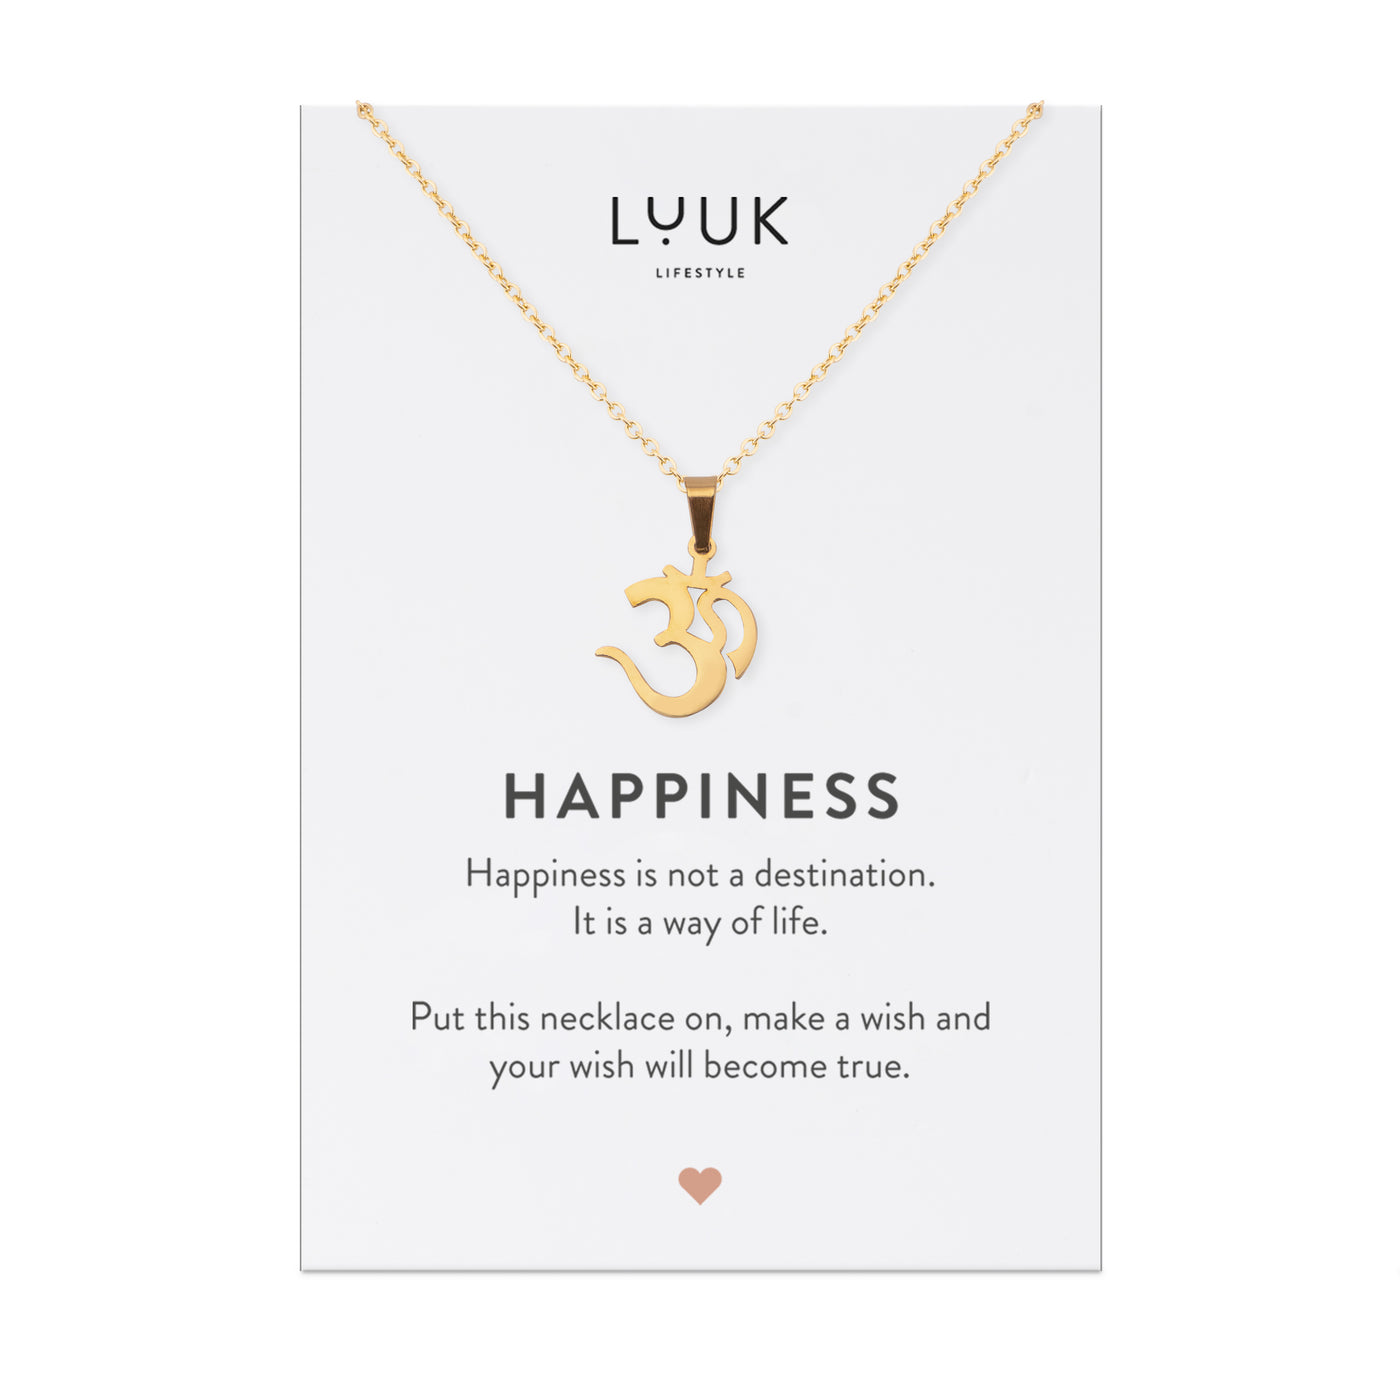 Goldene Halskette mit Om Anhänger auf Happiness Karte von der Brand Luuk Lifestyle.